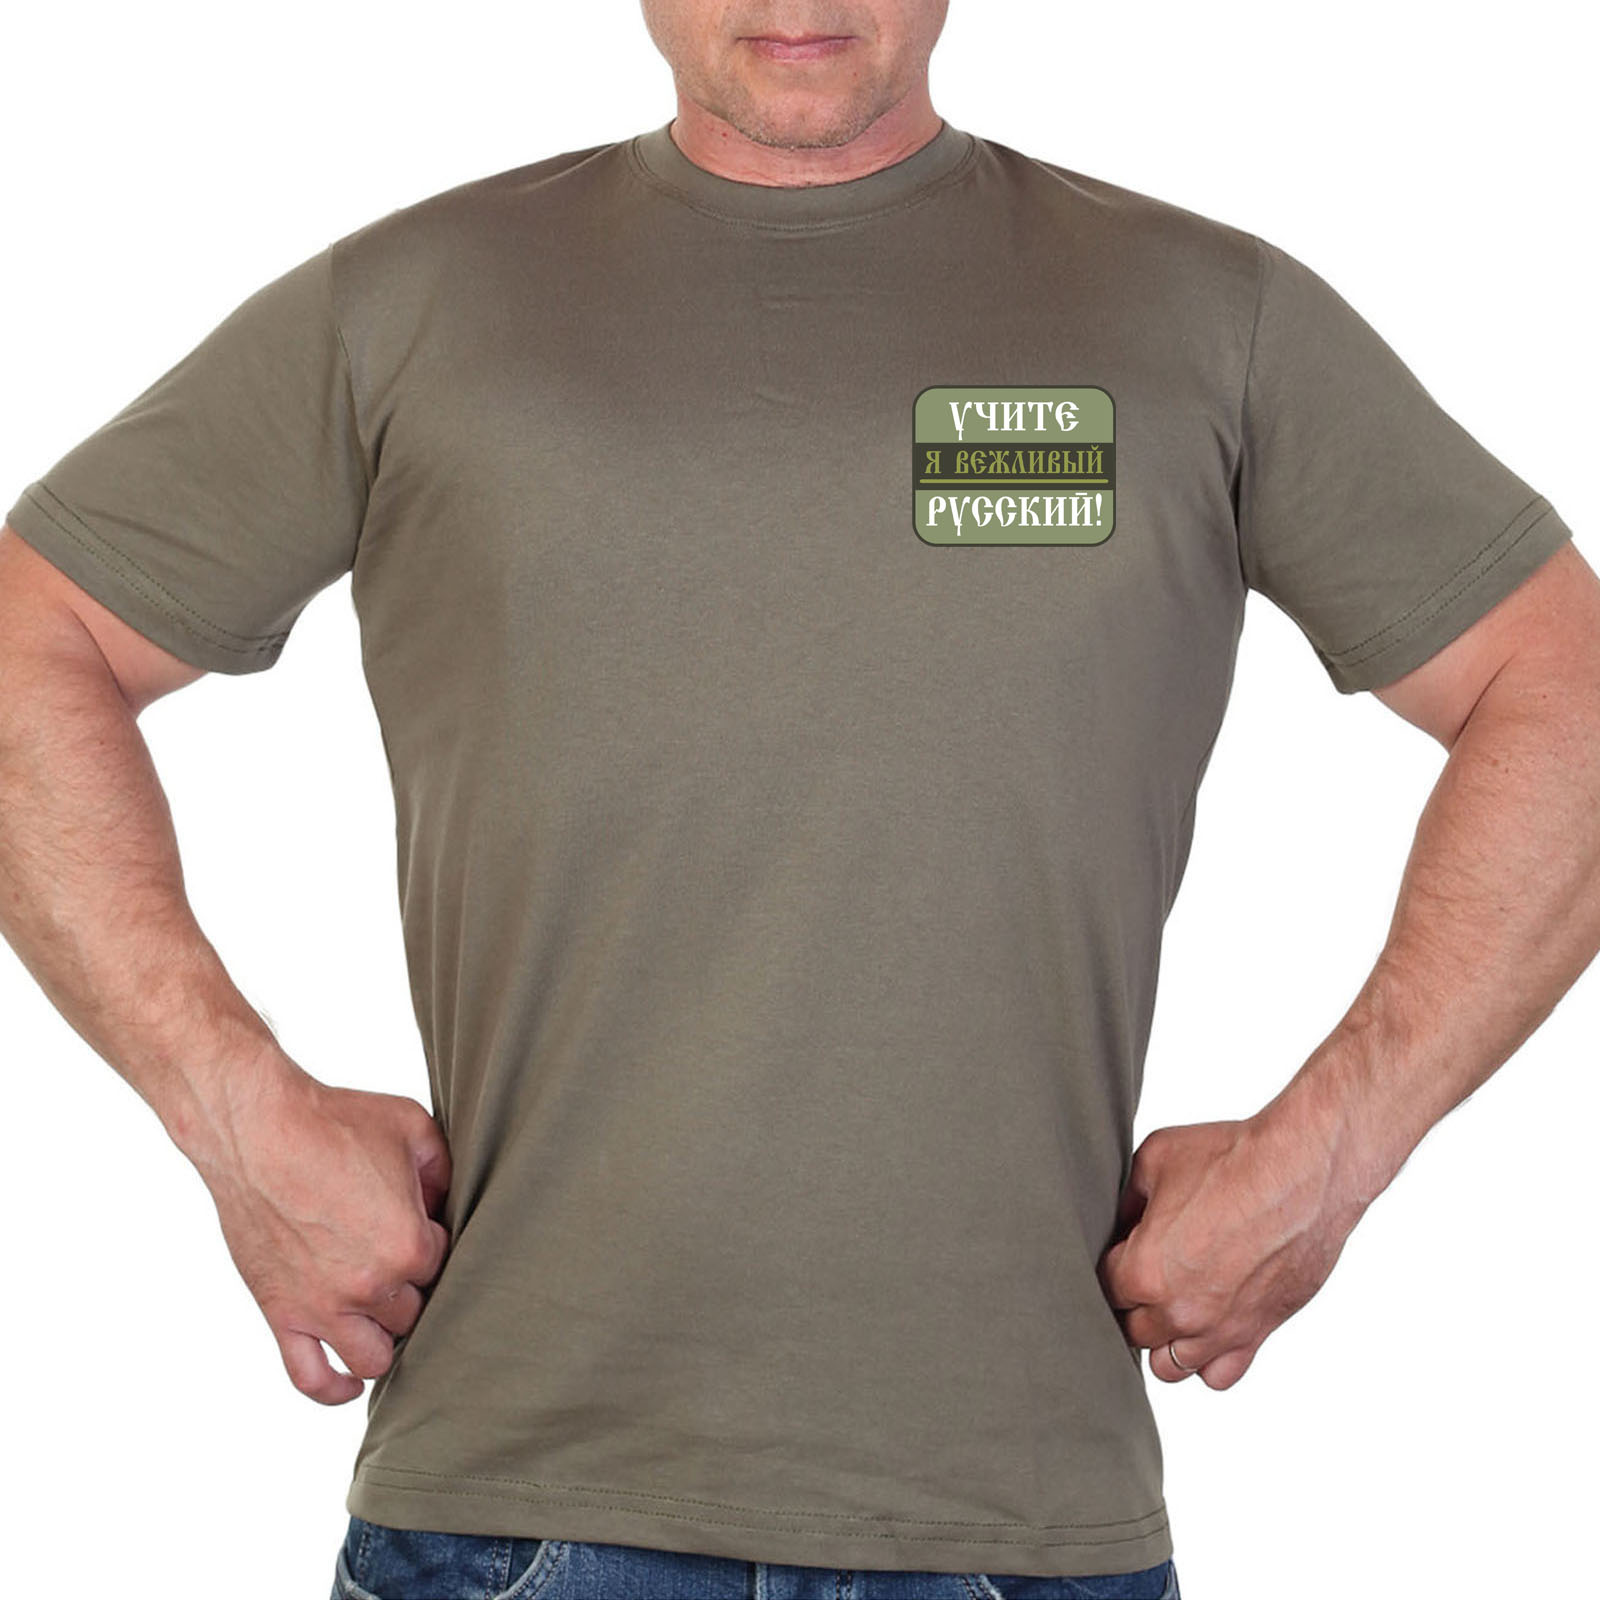 Купить стильную футболку хаки-олива с термотрансфером "Учите русский!"